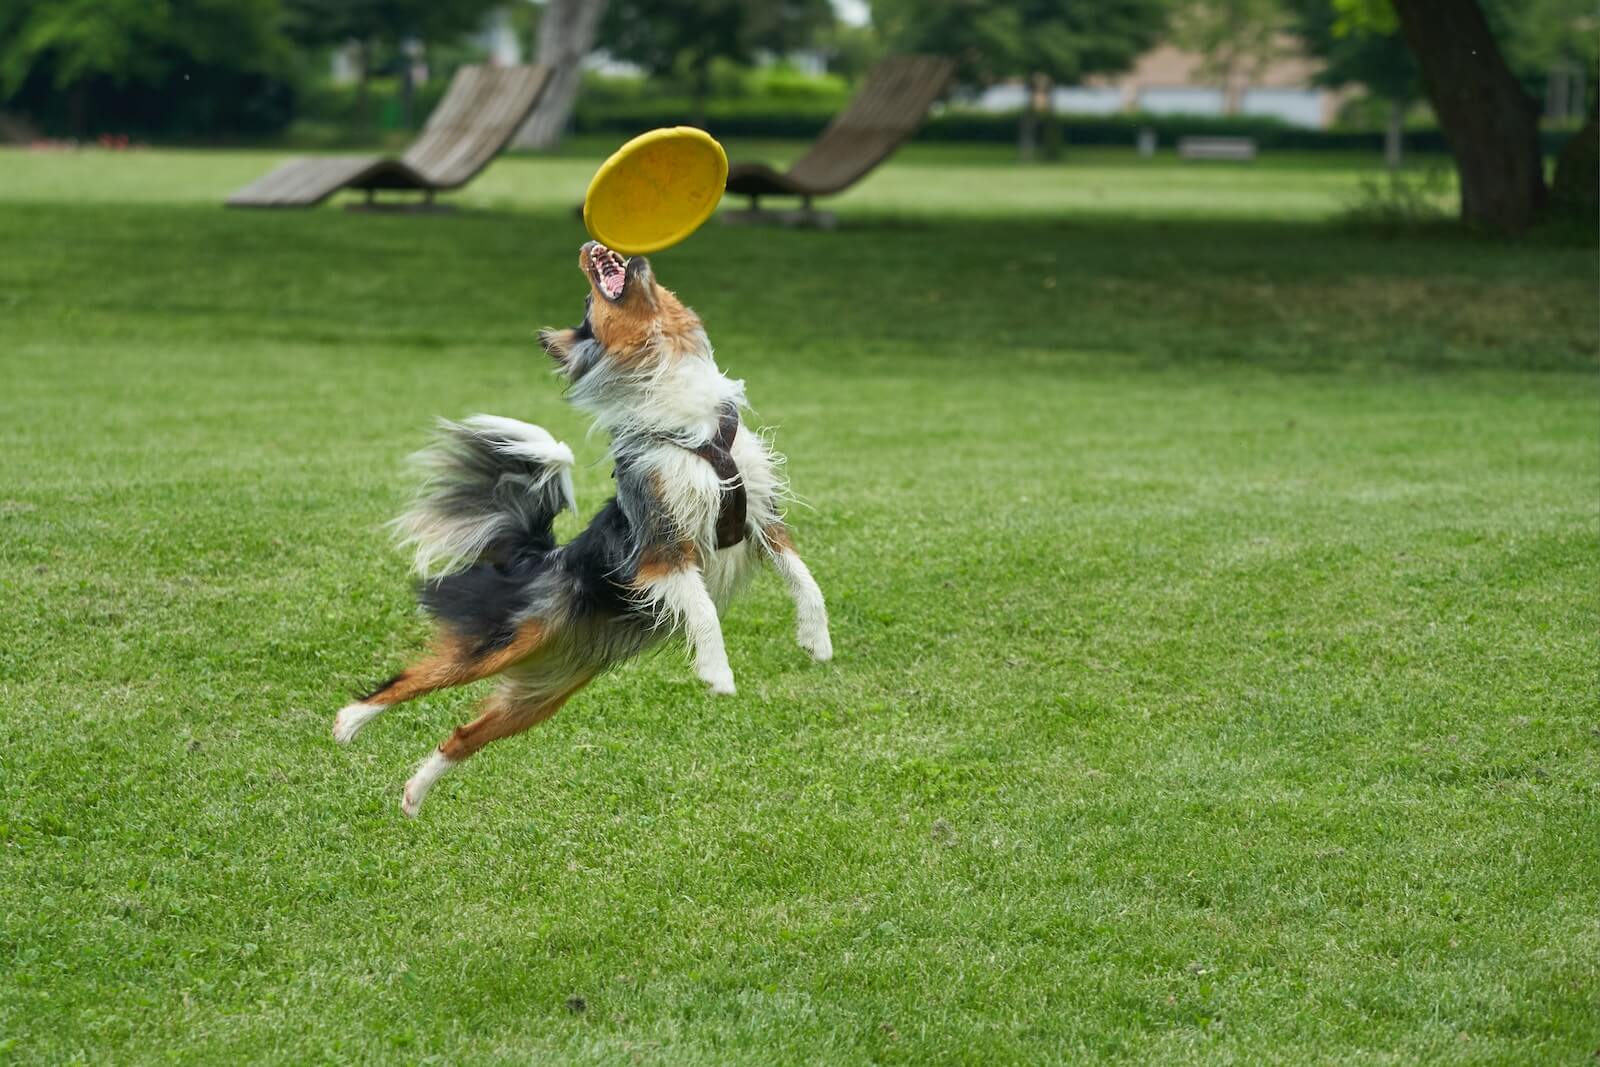 Australian Shepherd playing frisbee